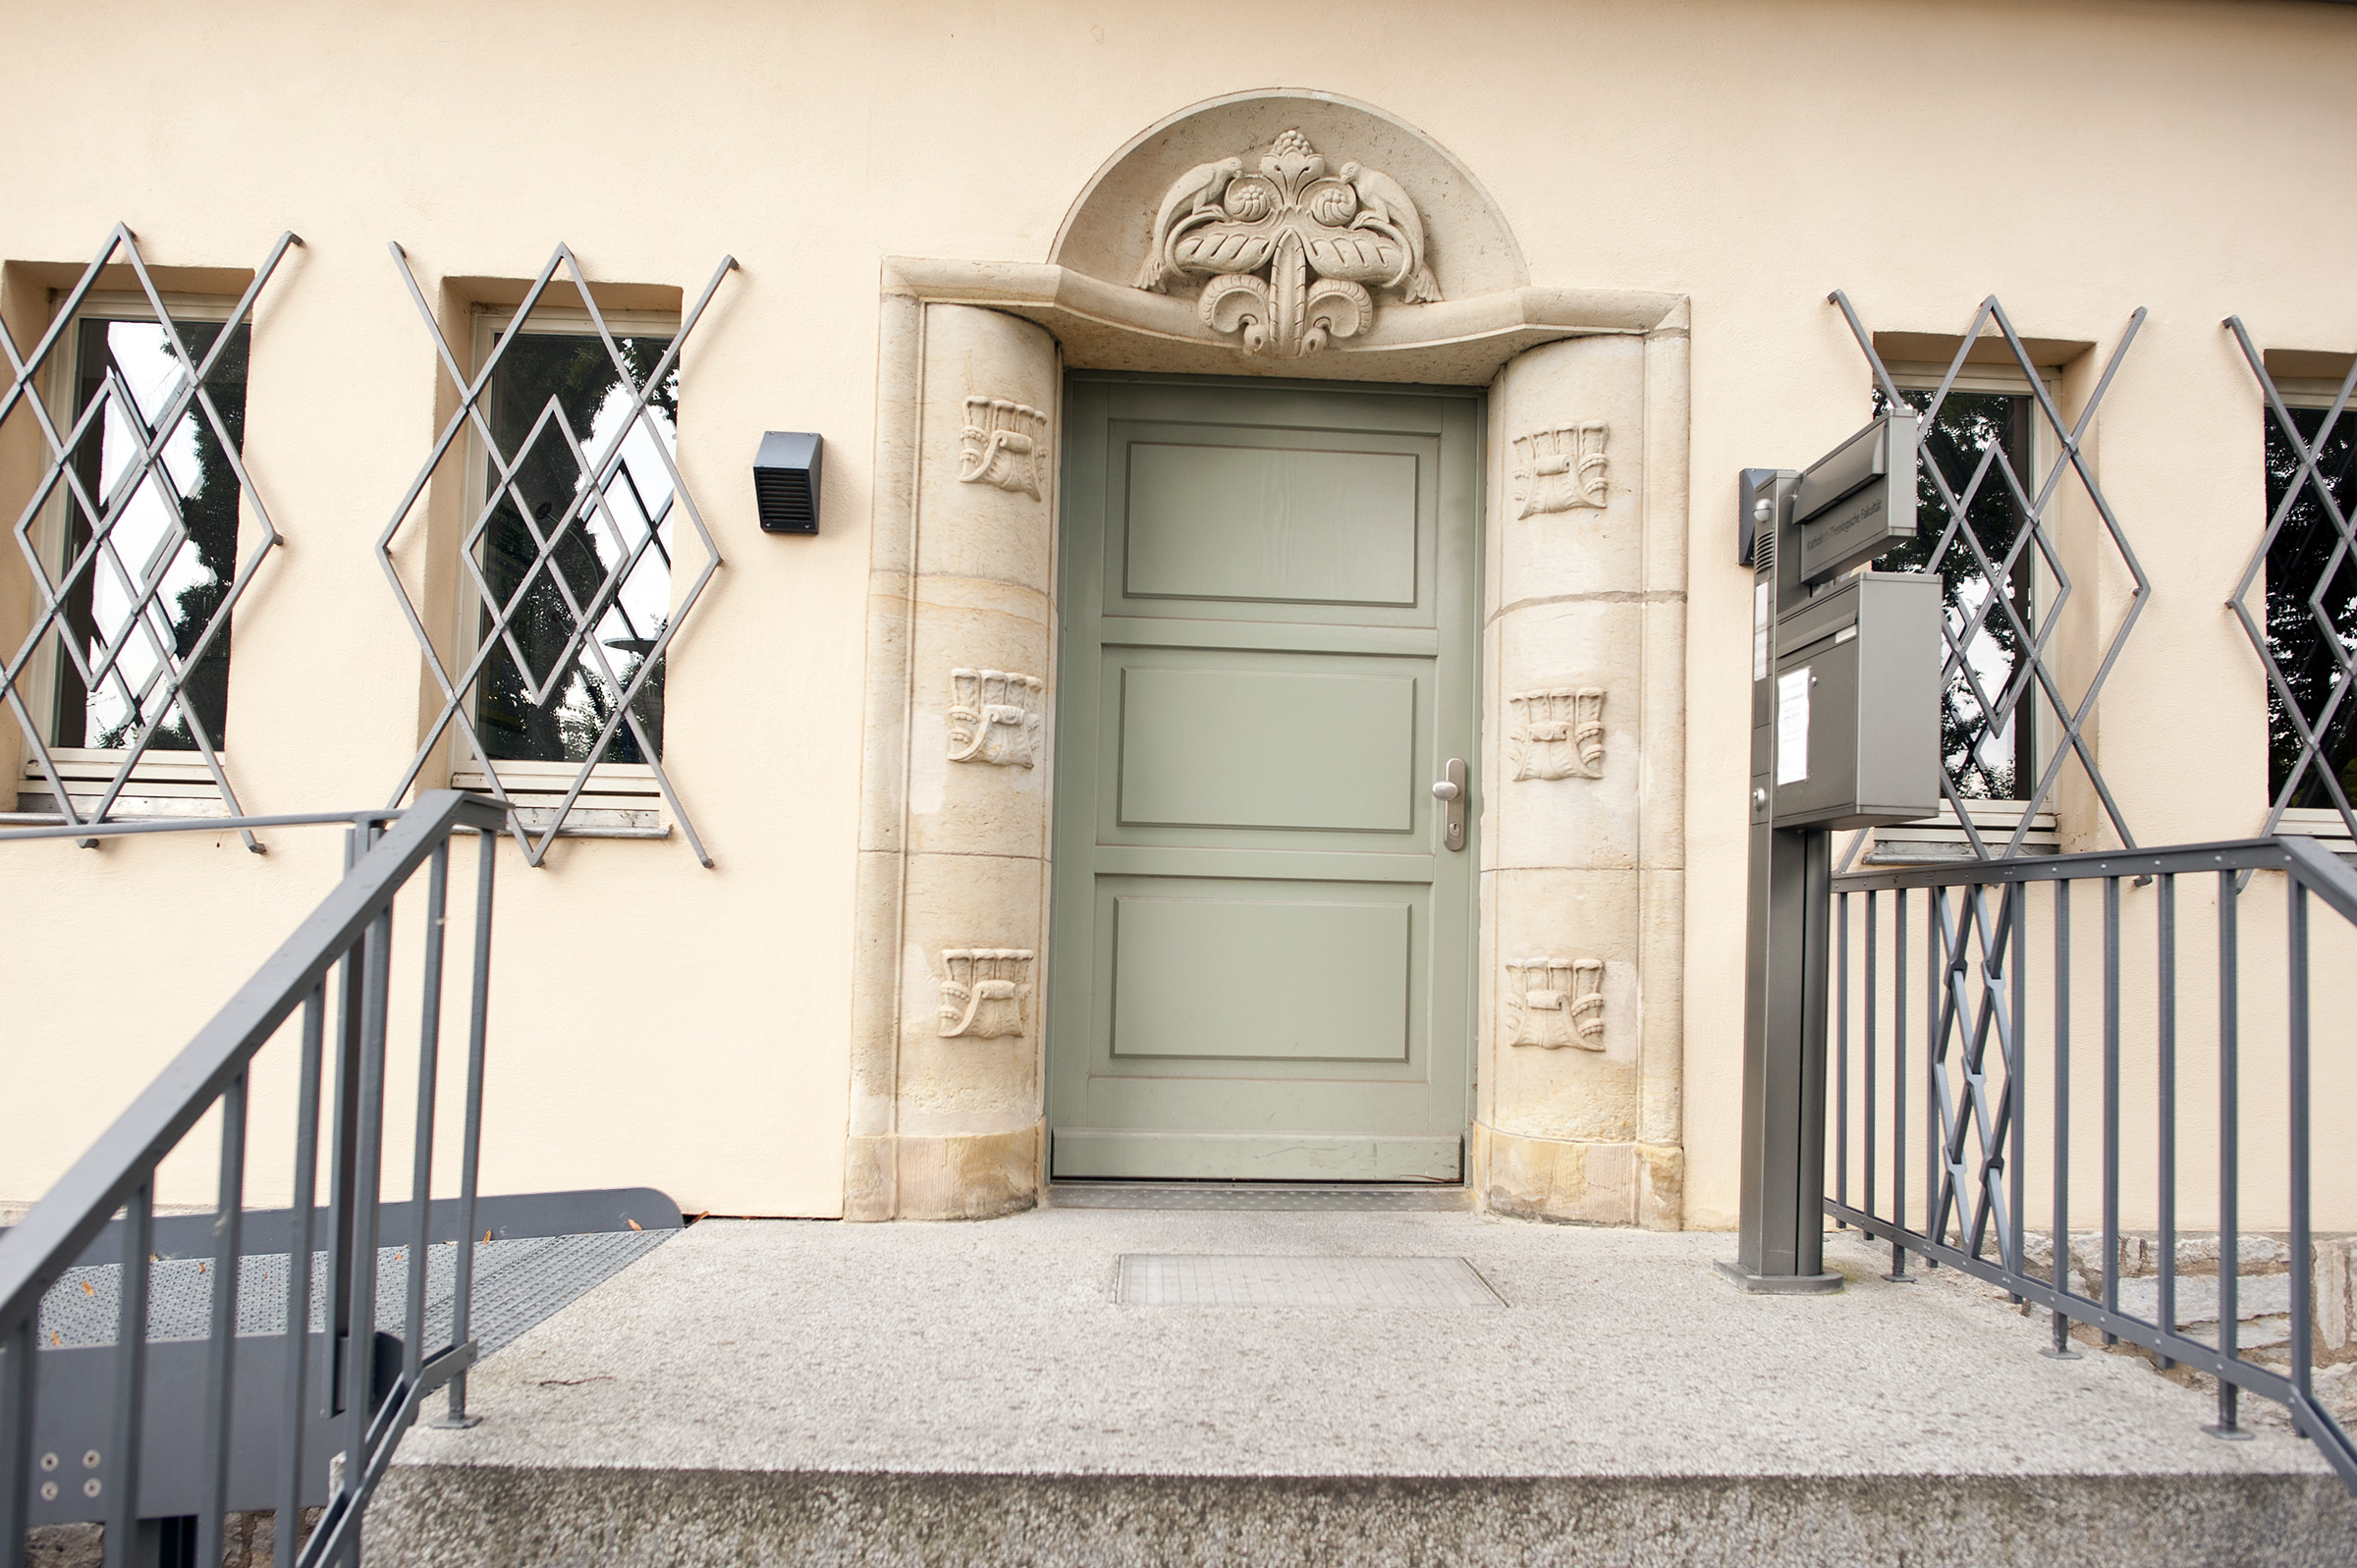 Eingang in die Villa Martin, Katholisch-Theologischen Fakultät der Uni Erfurt